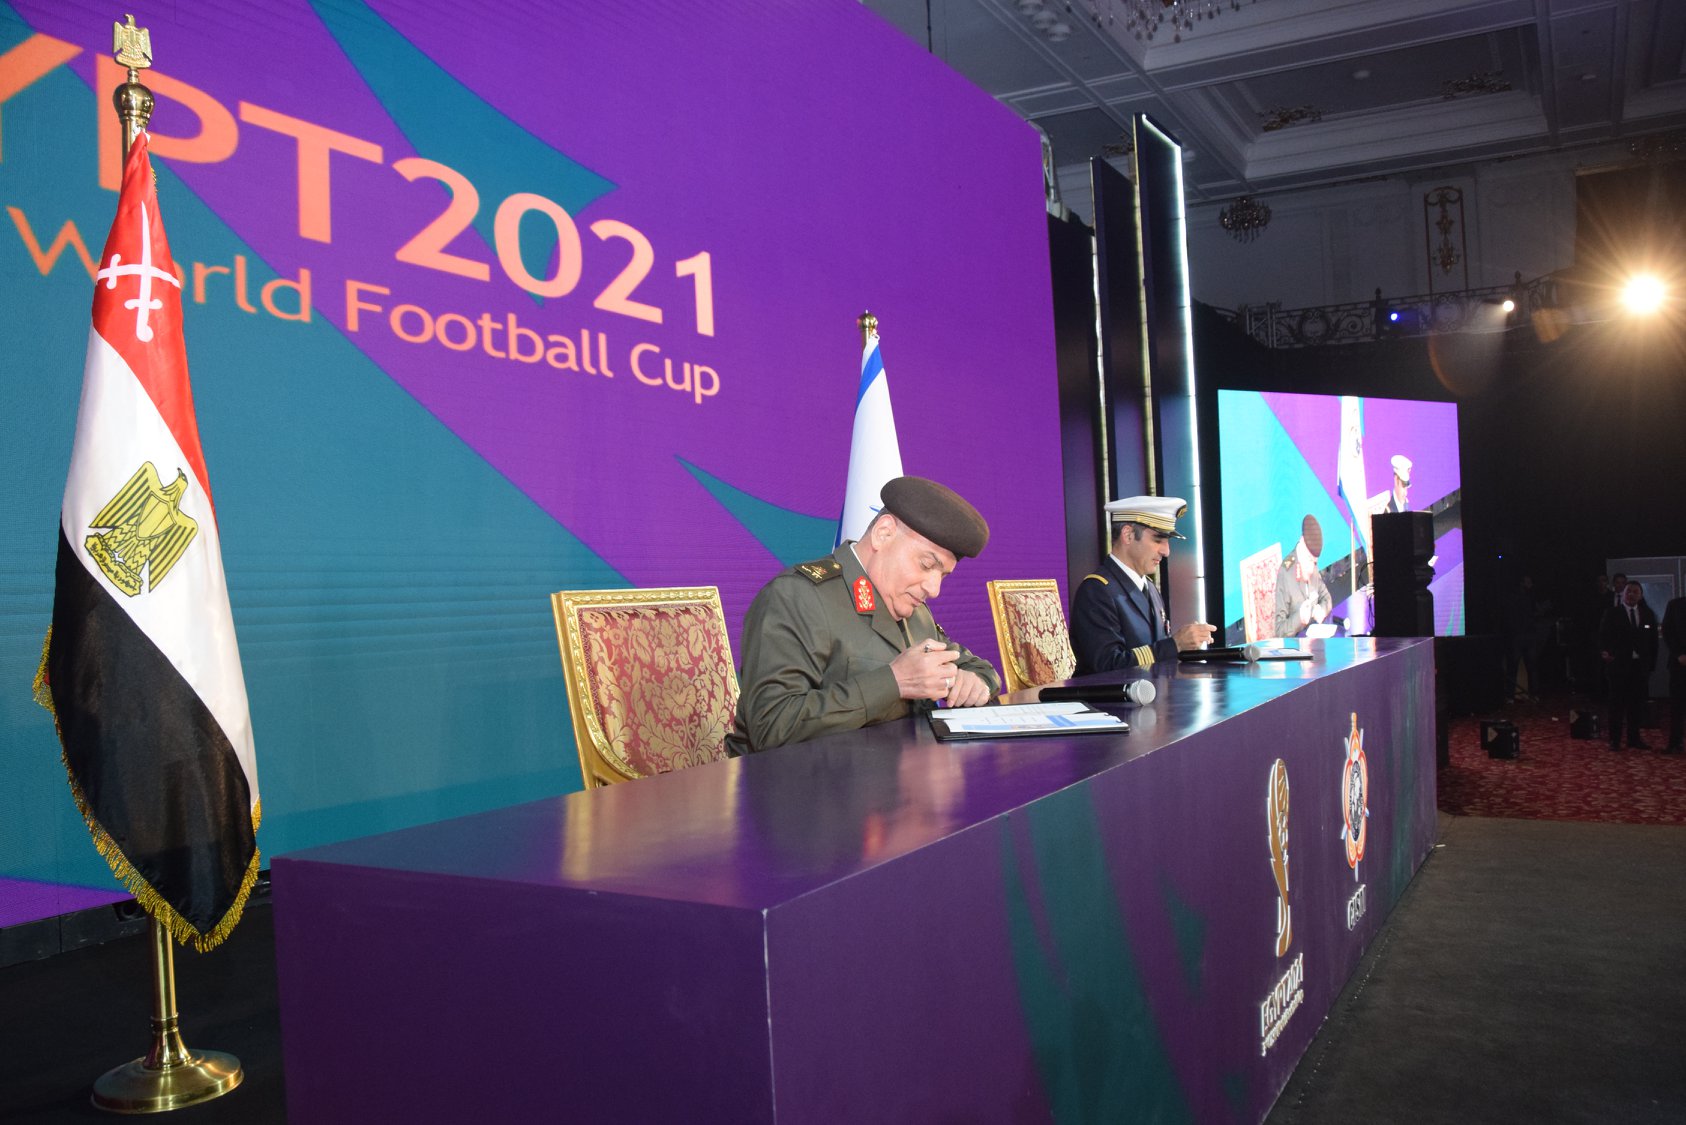   القوات المسلحة تنظم بطولة كأس العالم العسكرية الثالثة لكرة القدم «مصر 2021»